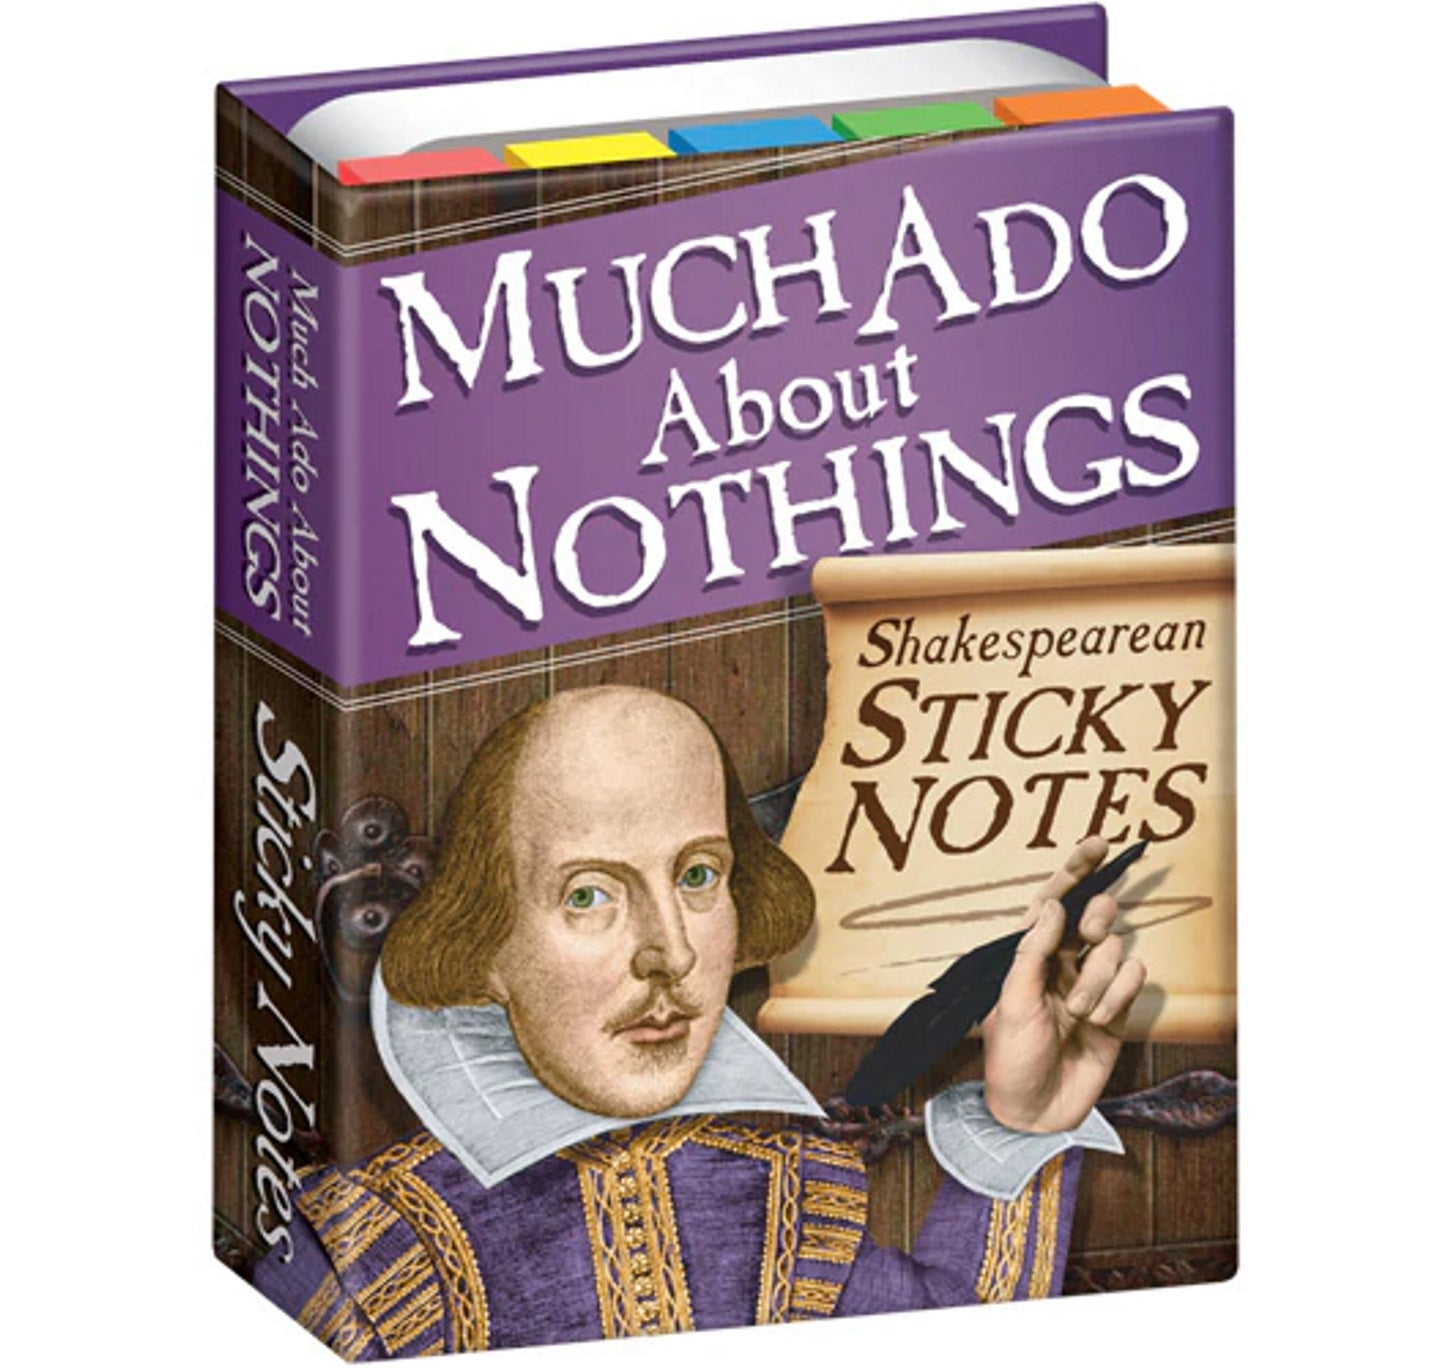 Shakespearean Sticky Notes